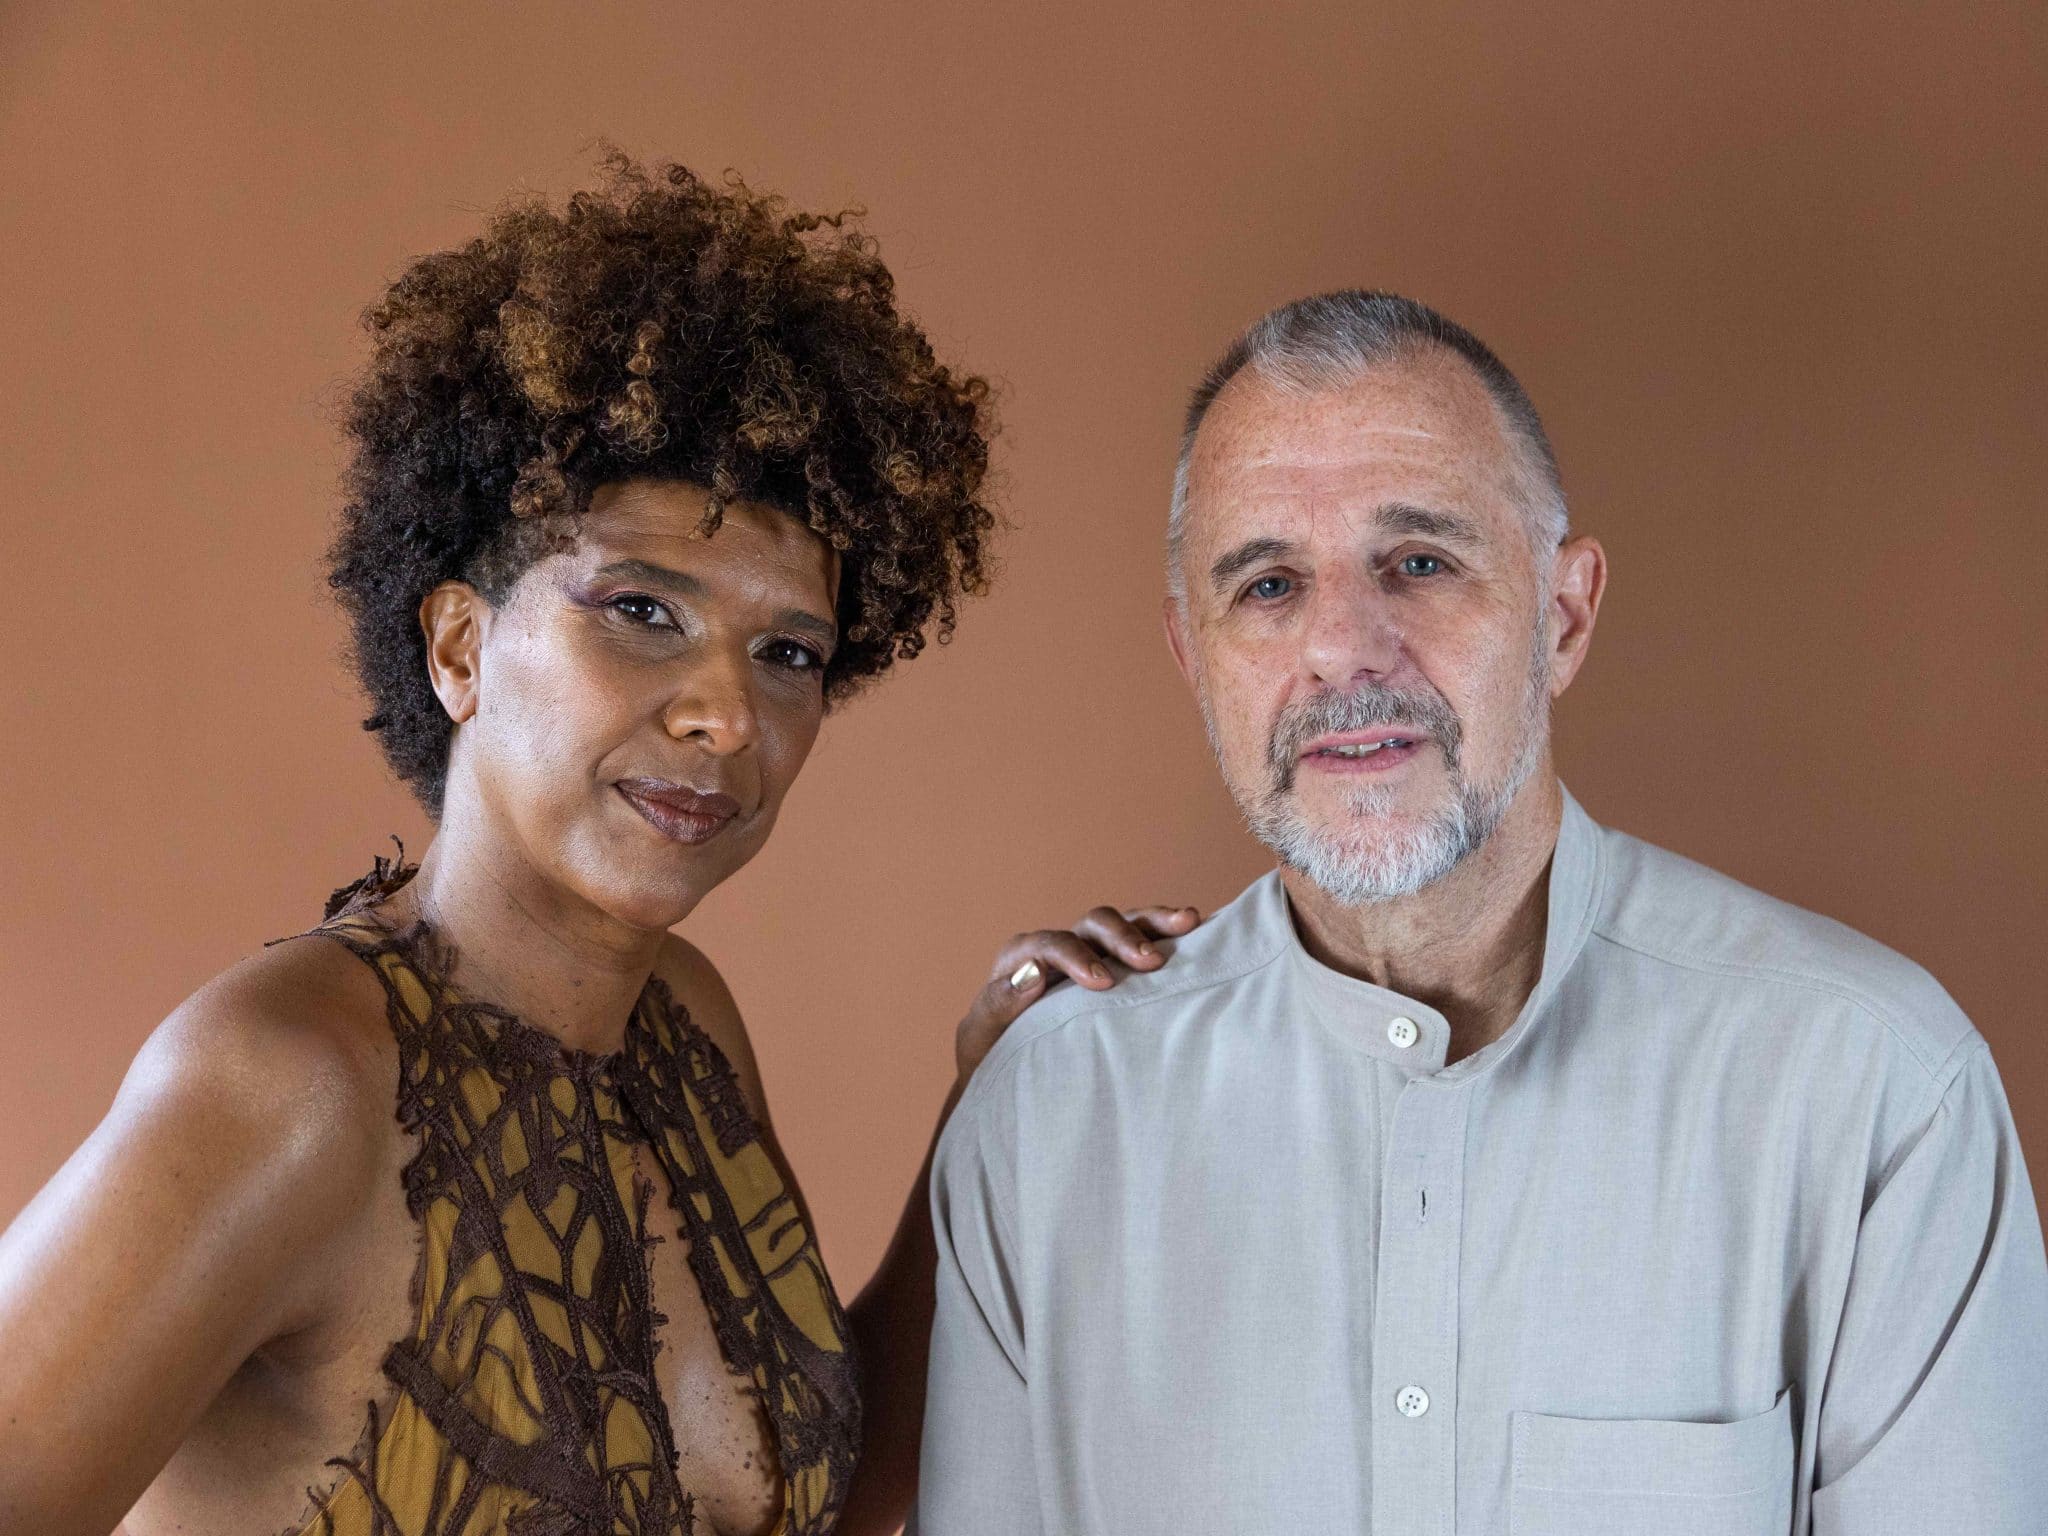 revistaprosaversoearte.com - Sandra Fidalgo e Swami Jr. lançam disco autoral 'Manhã Azul', em show no Teatro B32